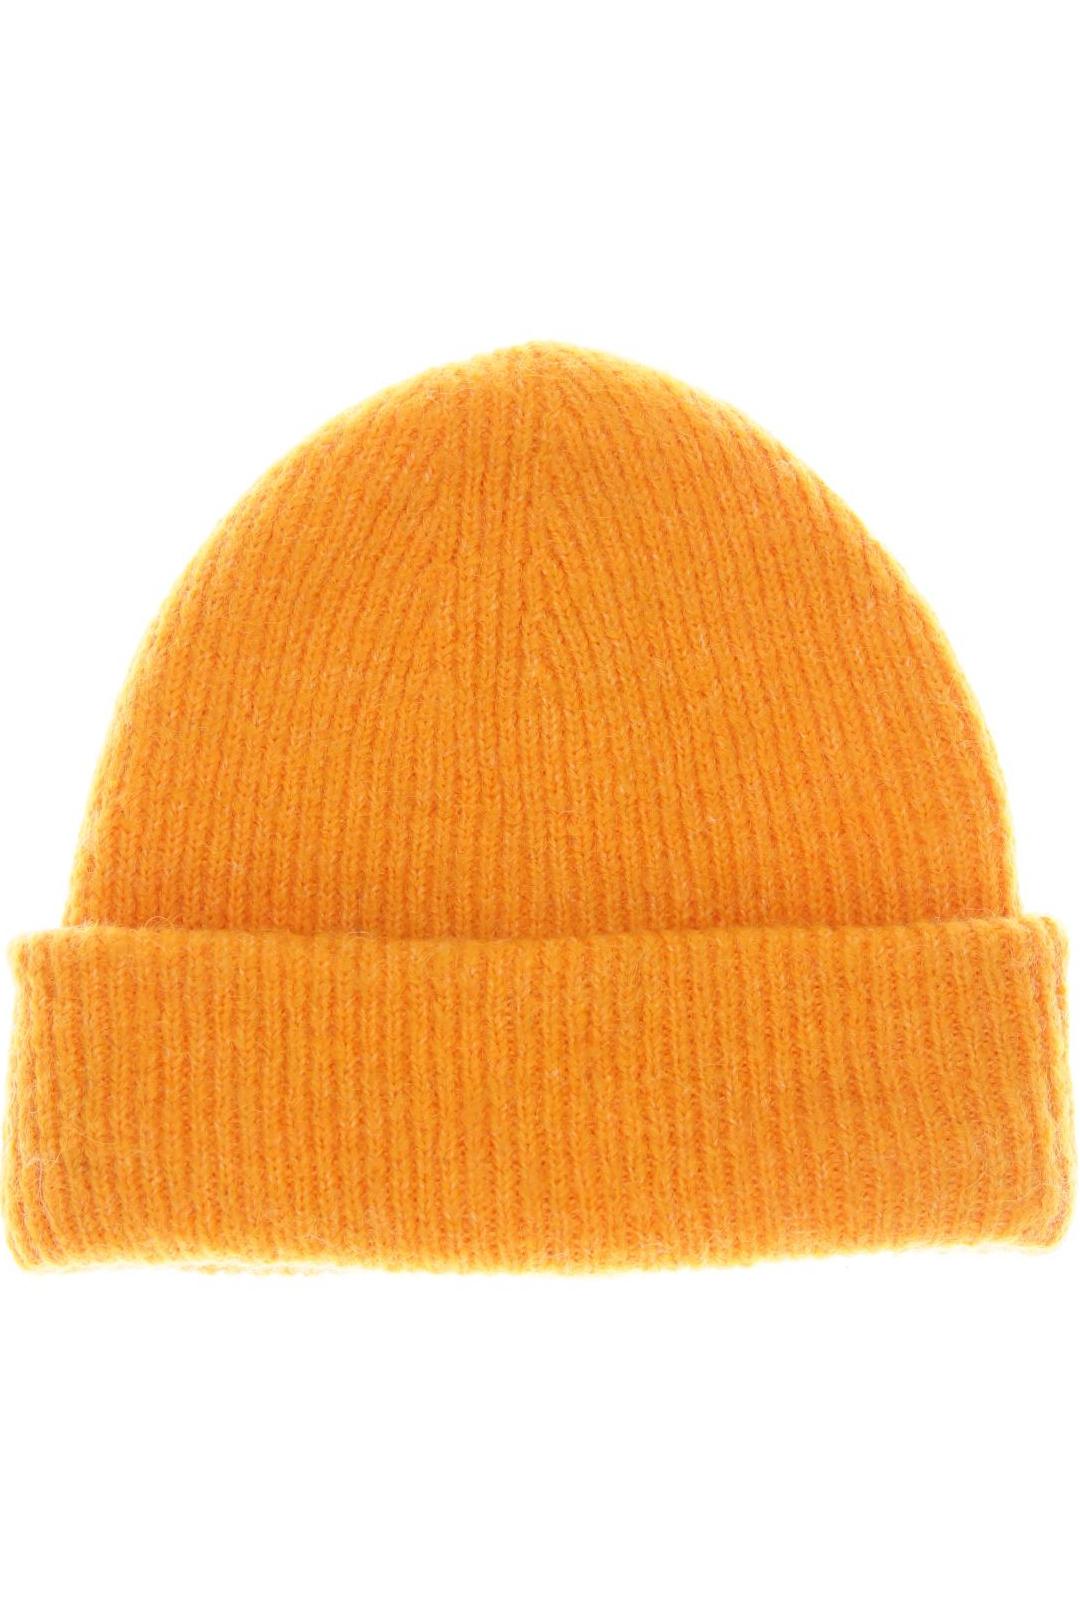 Zara Damen Hut/Mütze, orange, Gr. 56 von ZARA